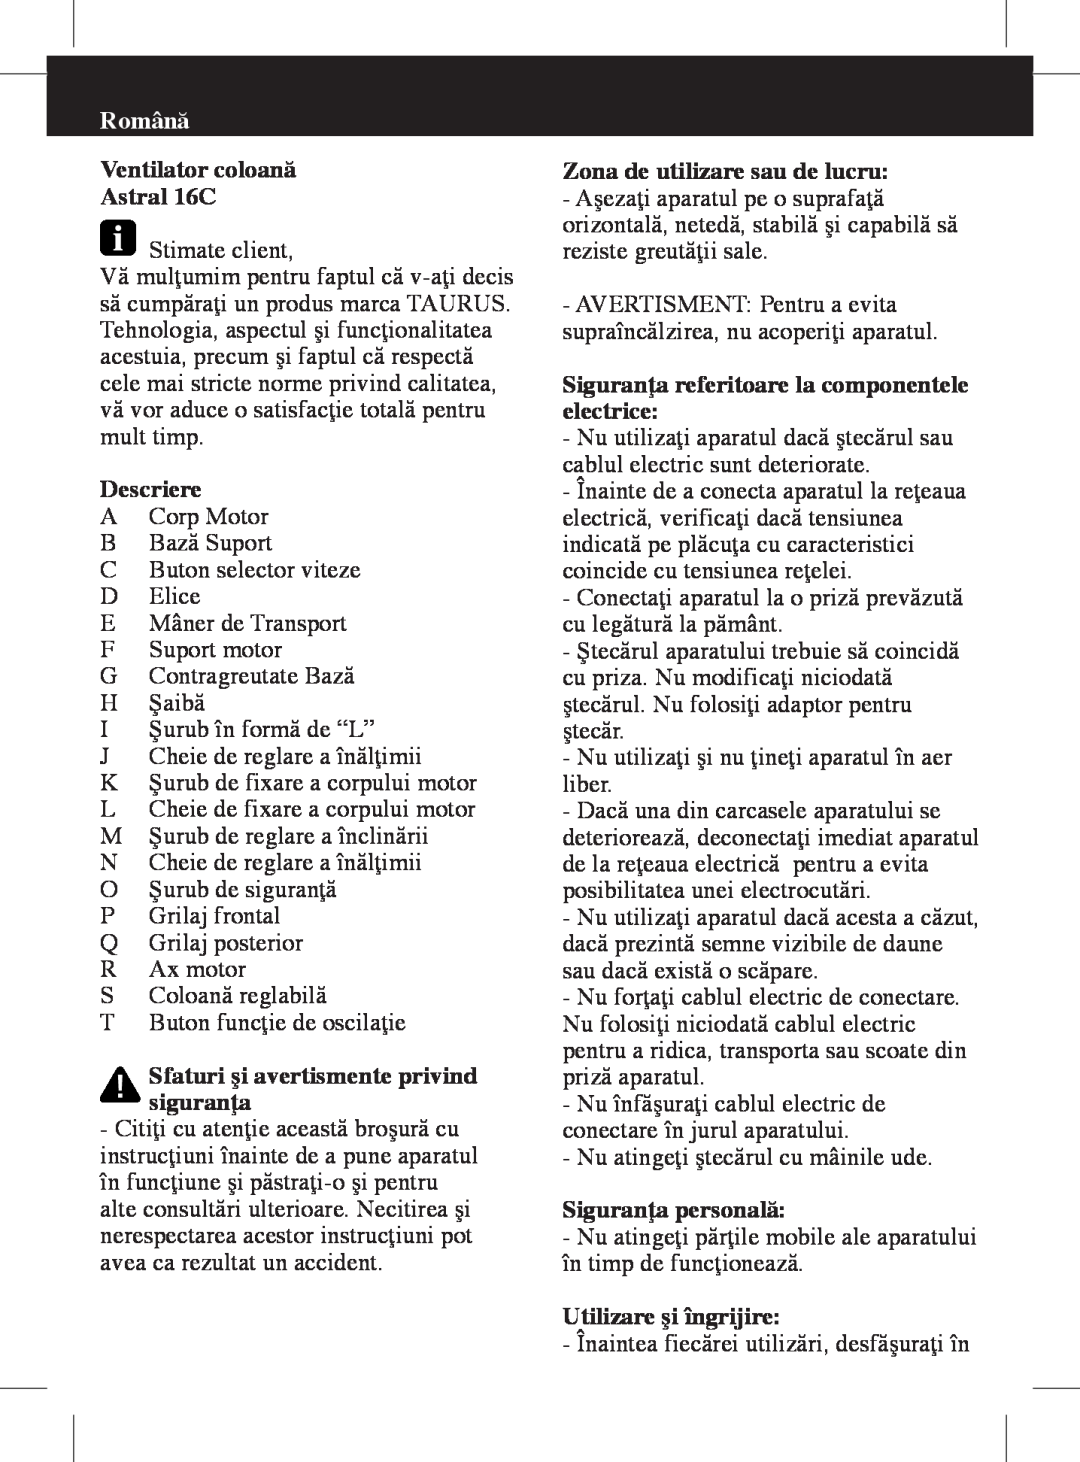 Taurus Group manual Română, Ventilator coloană Astral 16C, Descriere, Sfaturi şi avertismente privind siguranţa 